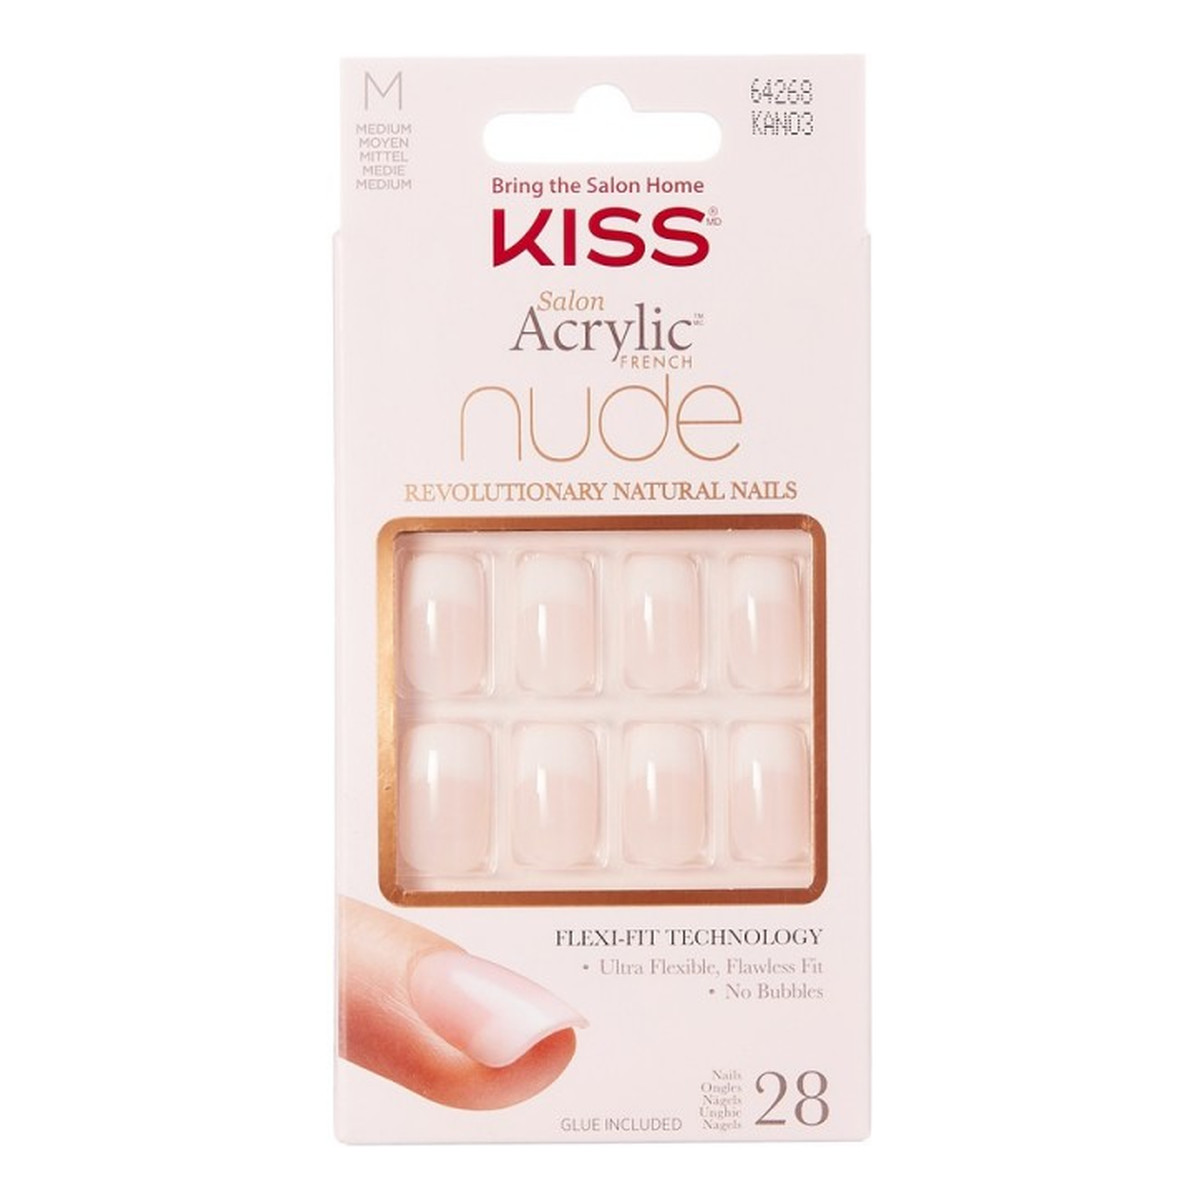 Kiss Salon Acrylic French Nude Sztuczne paznokcie Cashmere (M) 28szt.